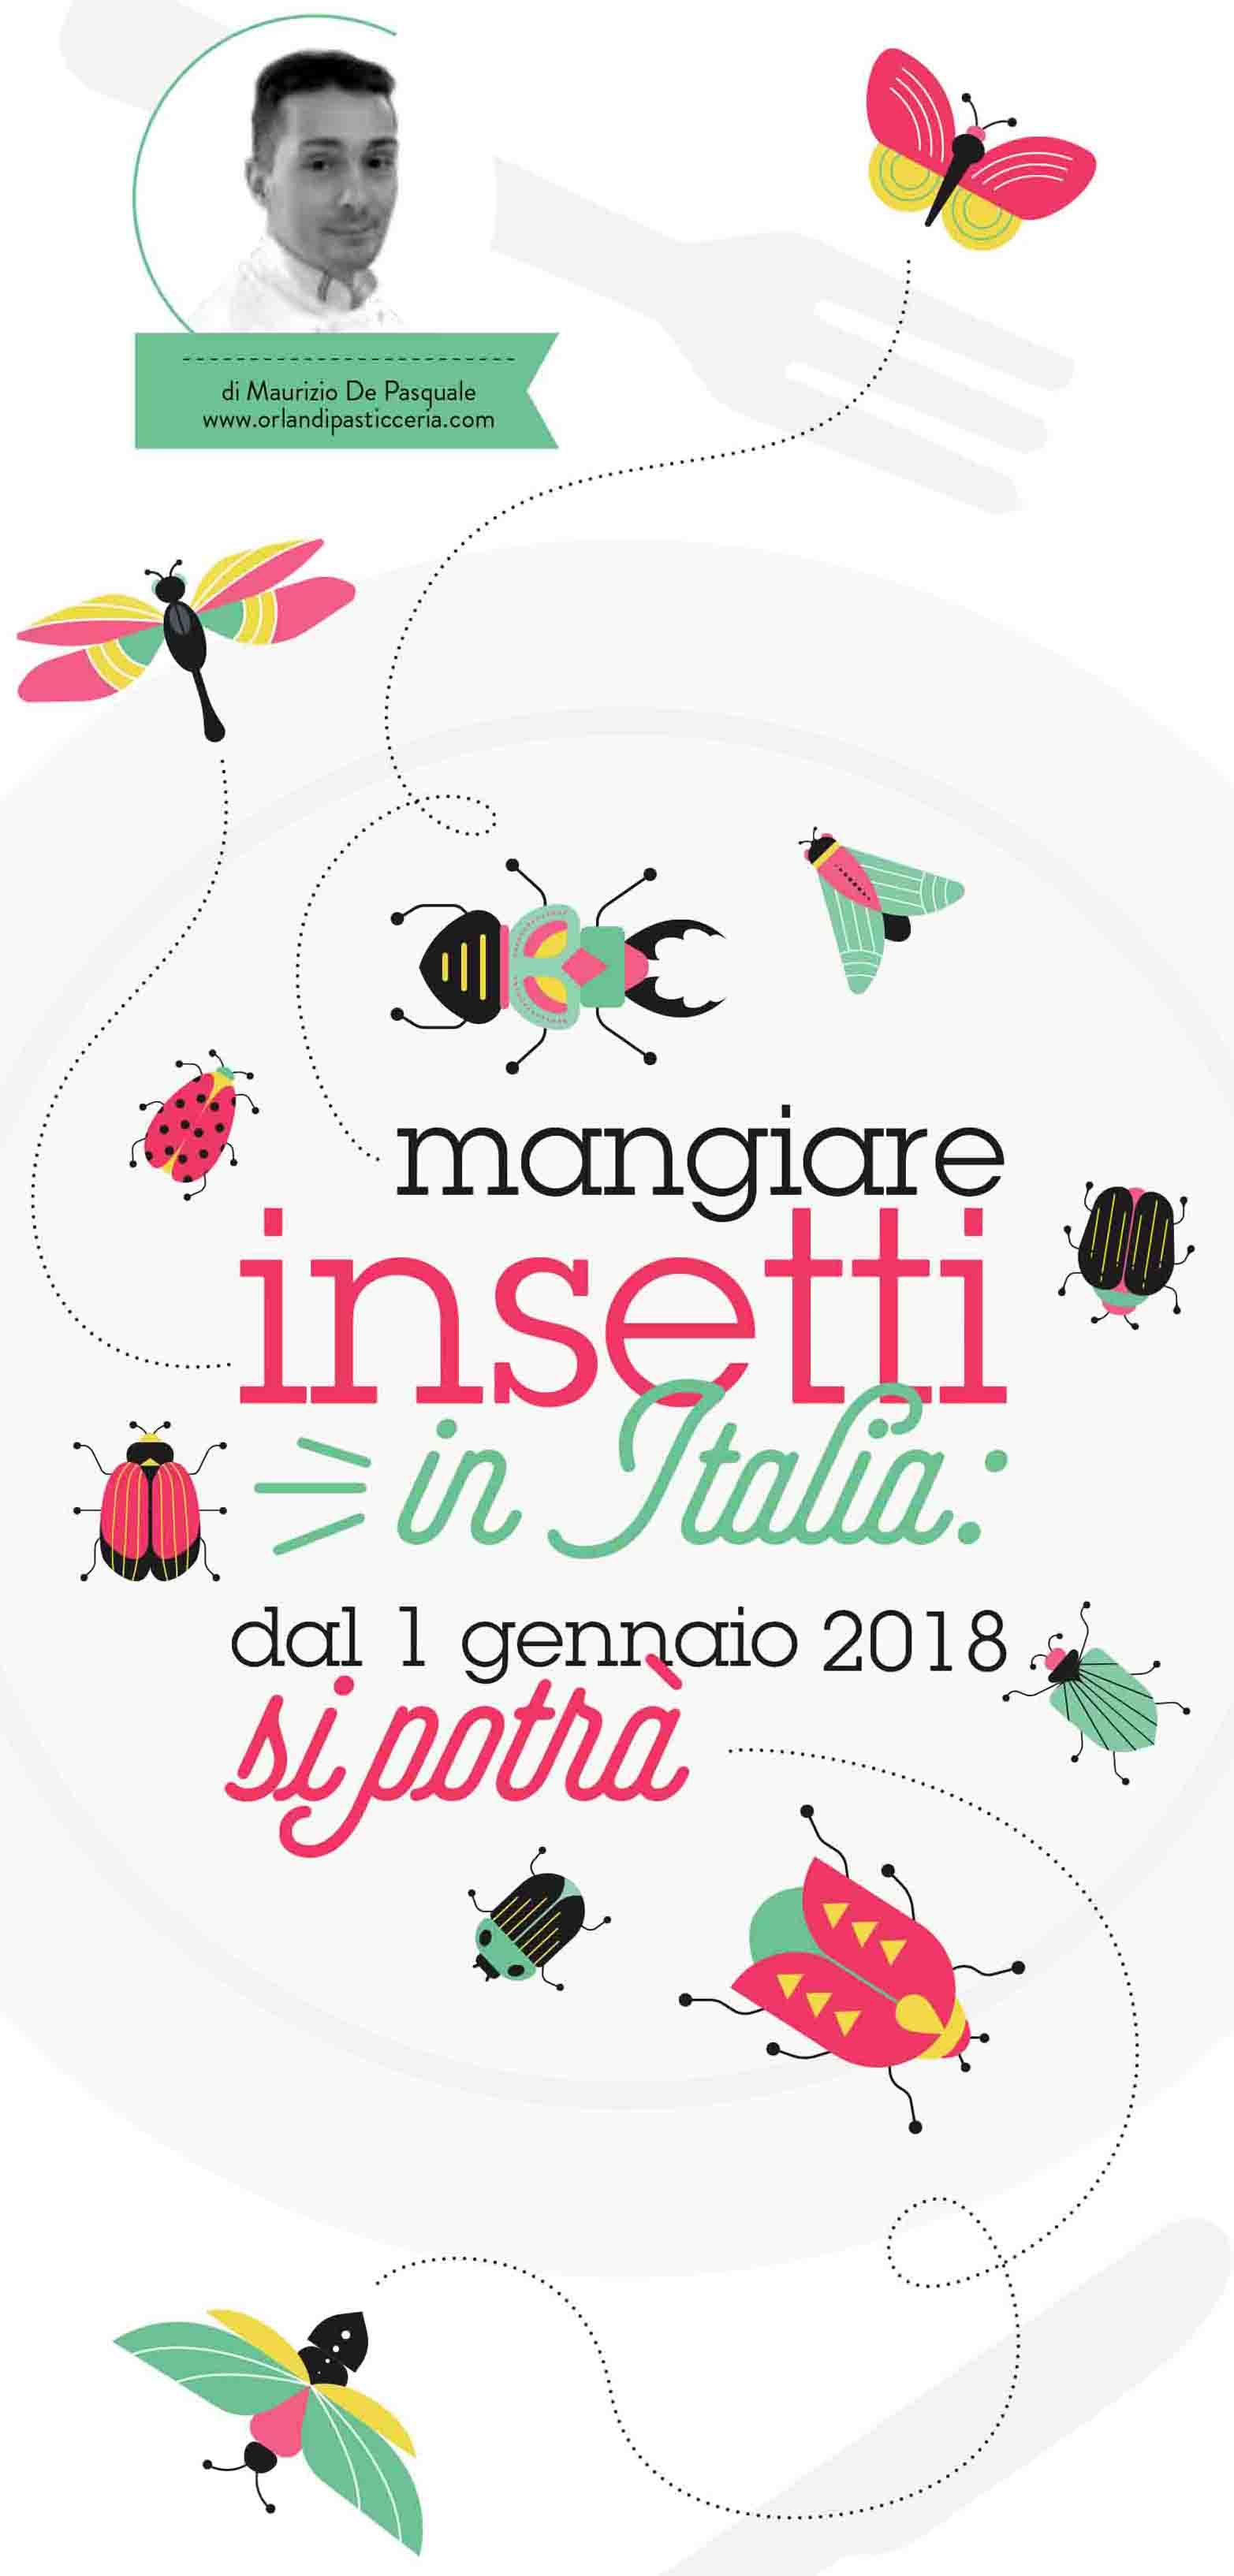 Mangiare Insetti in Italia!